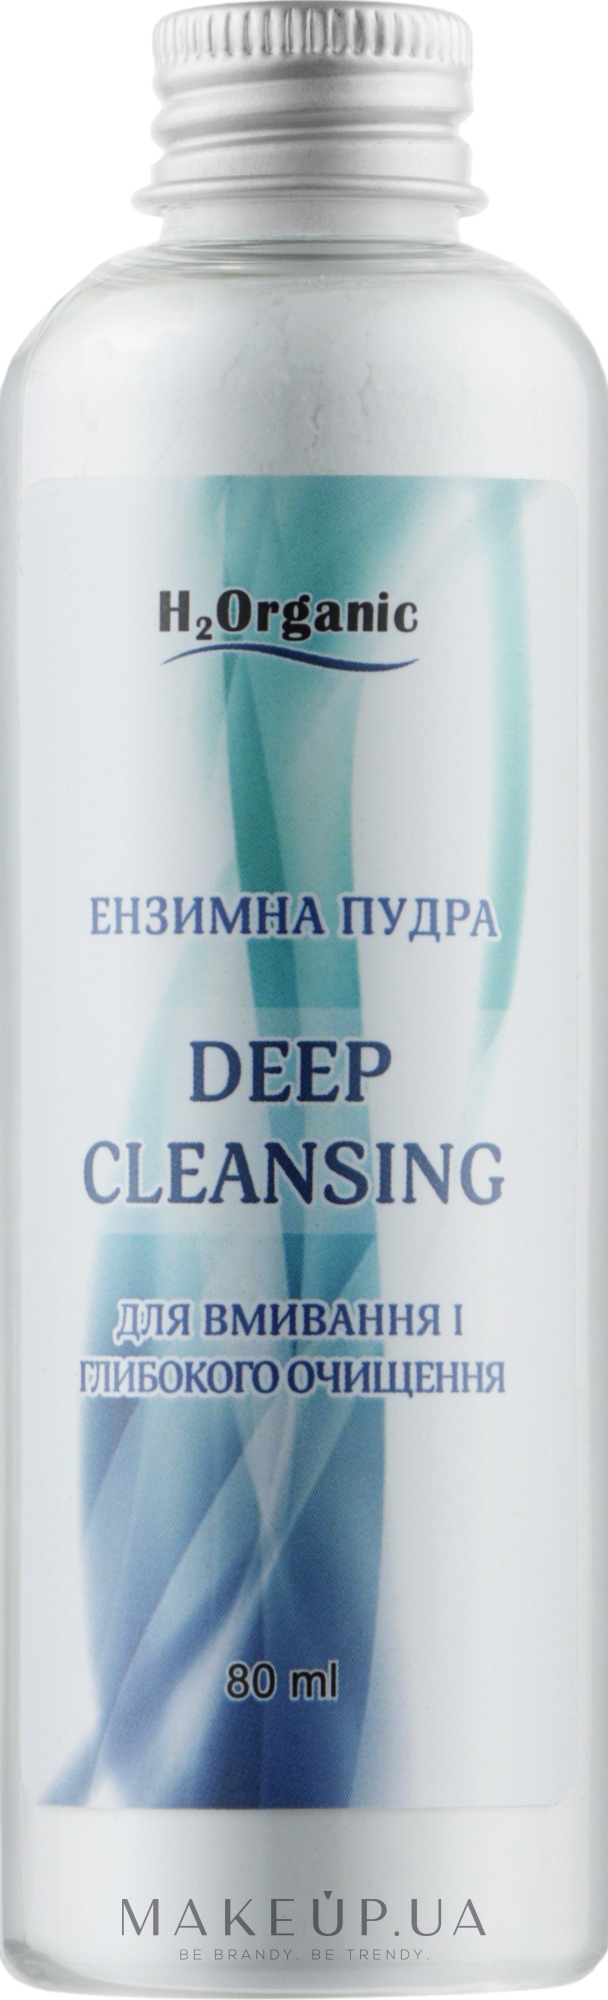 Ензимна пудра для вмивання й глибокого очищення обличчя - H2Organic Deep Cleansing — фото 80ml